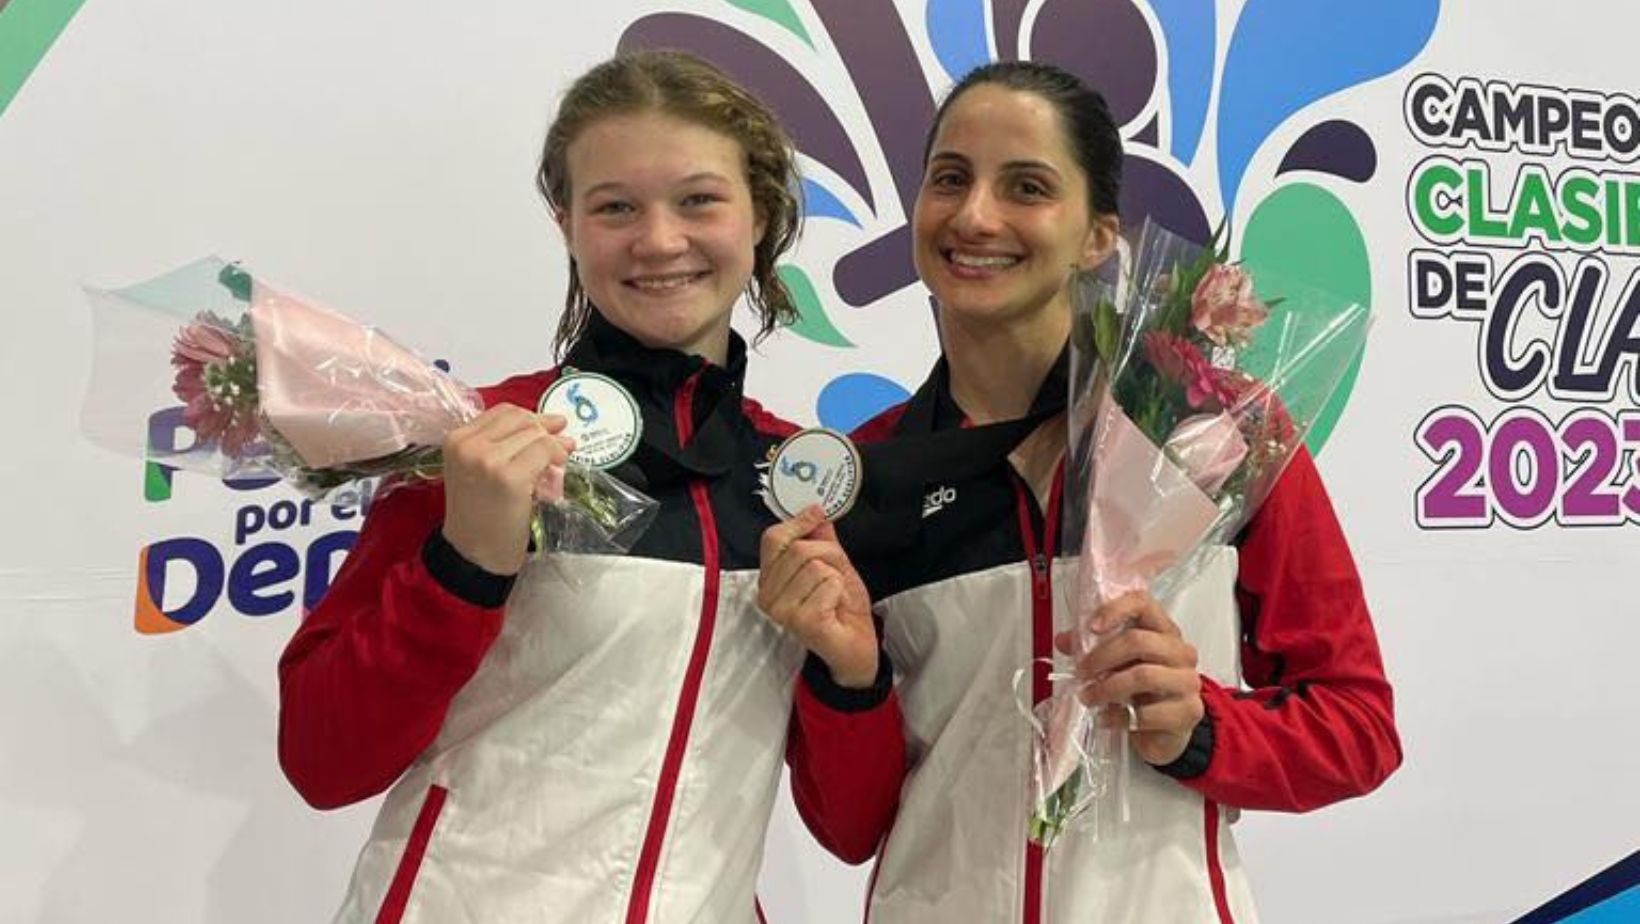 Two Medals in Women’s 10 m, Fofana Wins Bronze